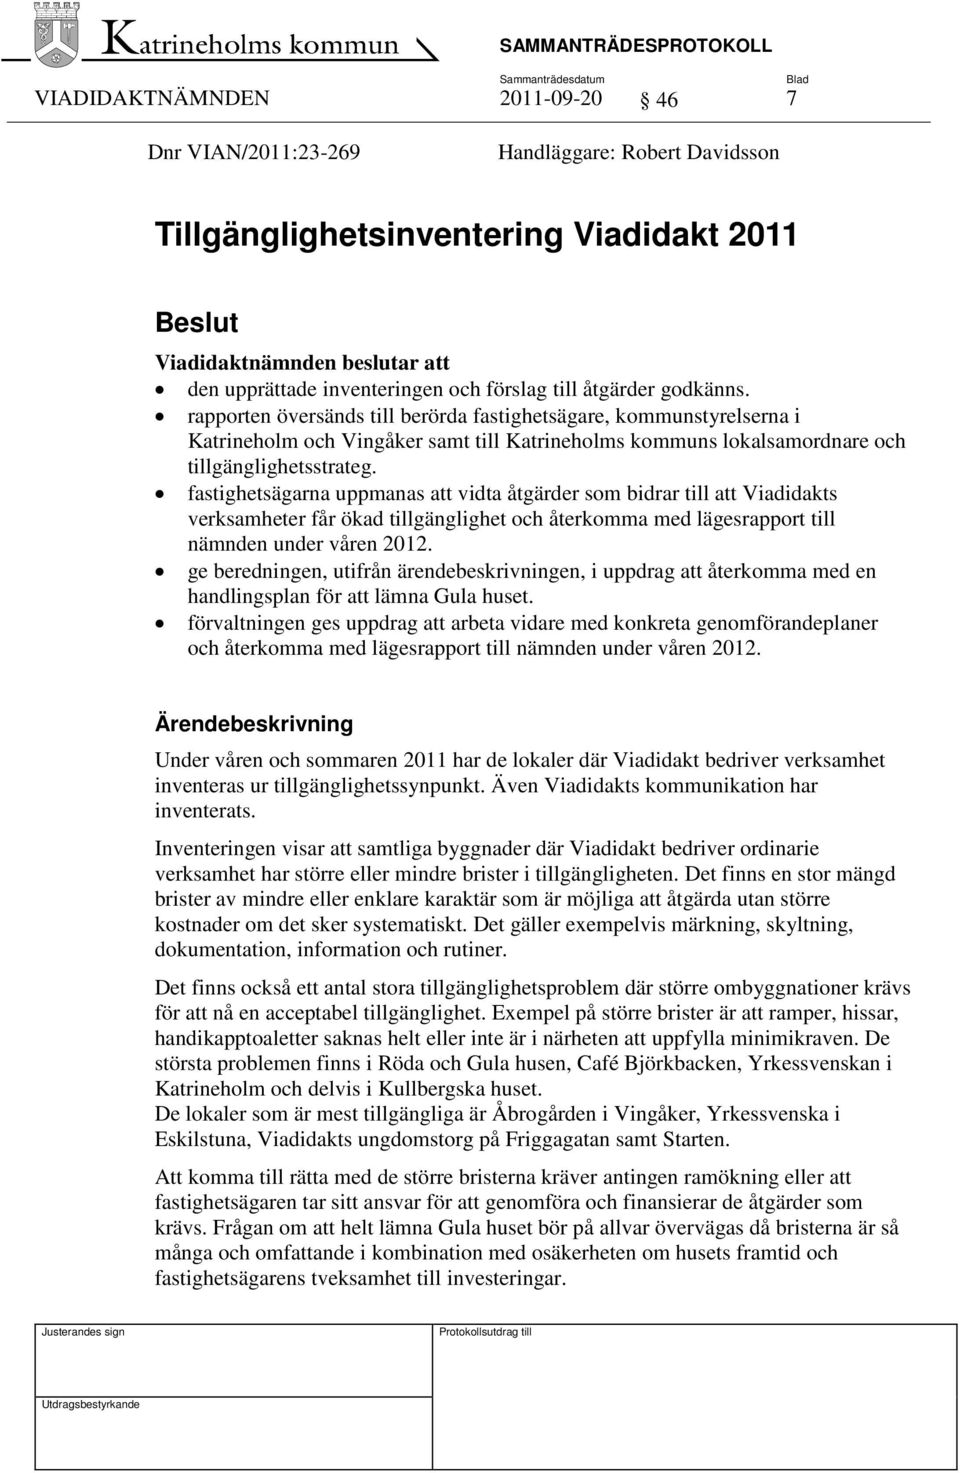 rapporten översänds till berörda fastighetsägare, kommunstyrelserna i Katrineholm och Vingåker samt till Katrineholms kommuns lokalsamordnare och tillgänglighetsstrateg.